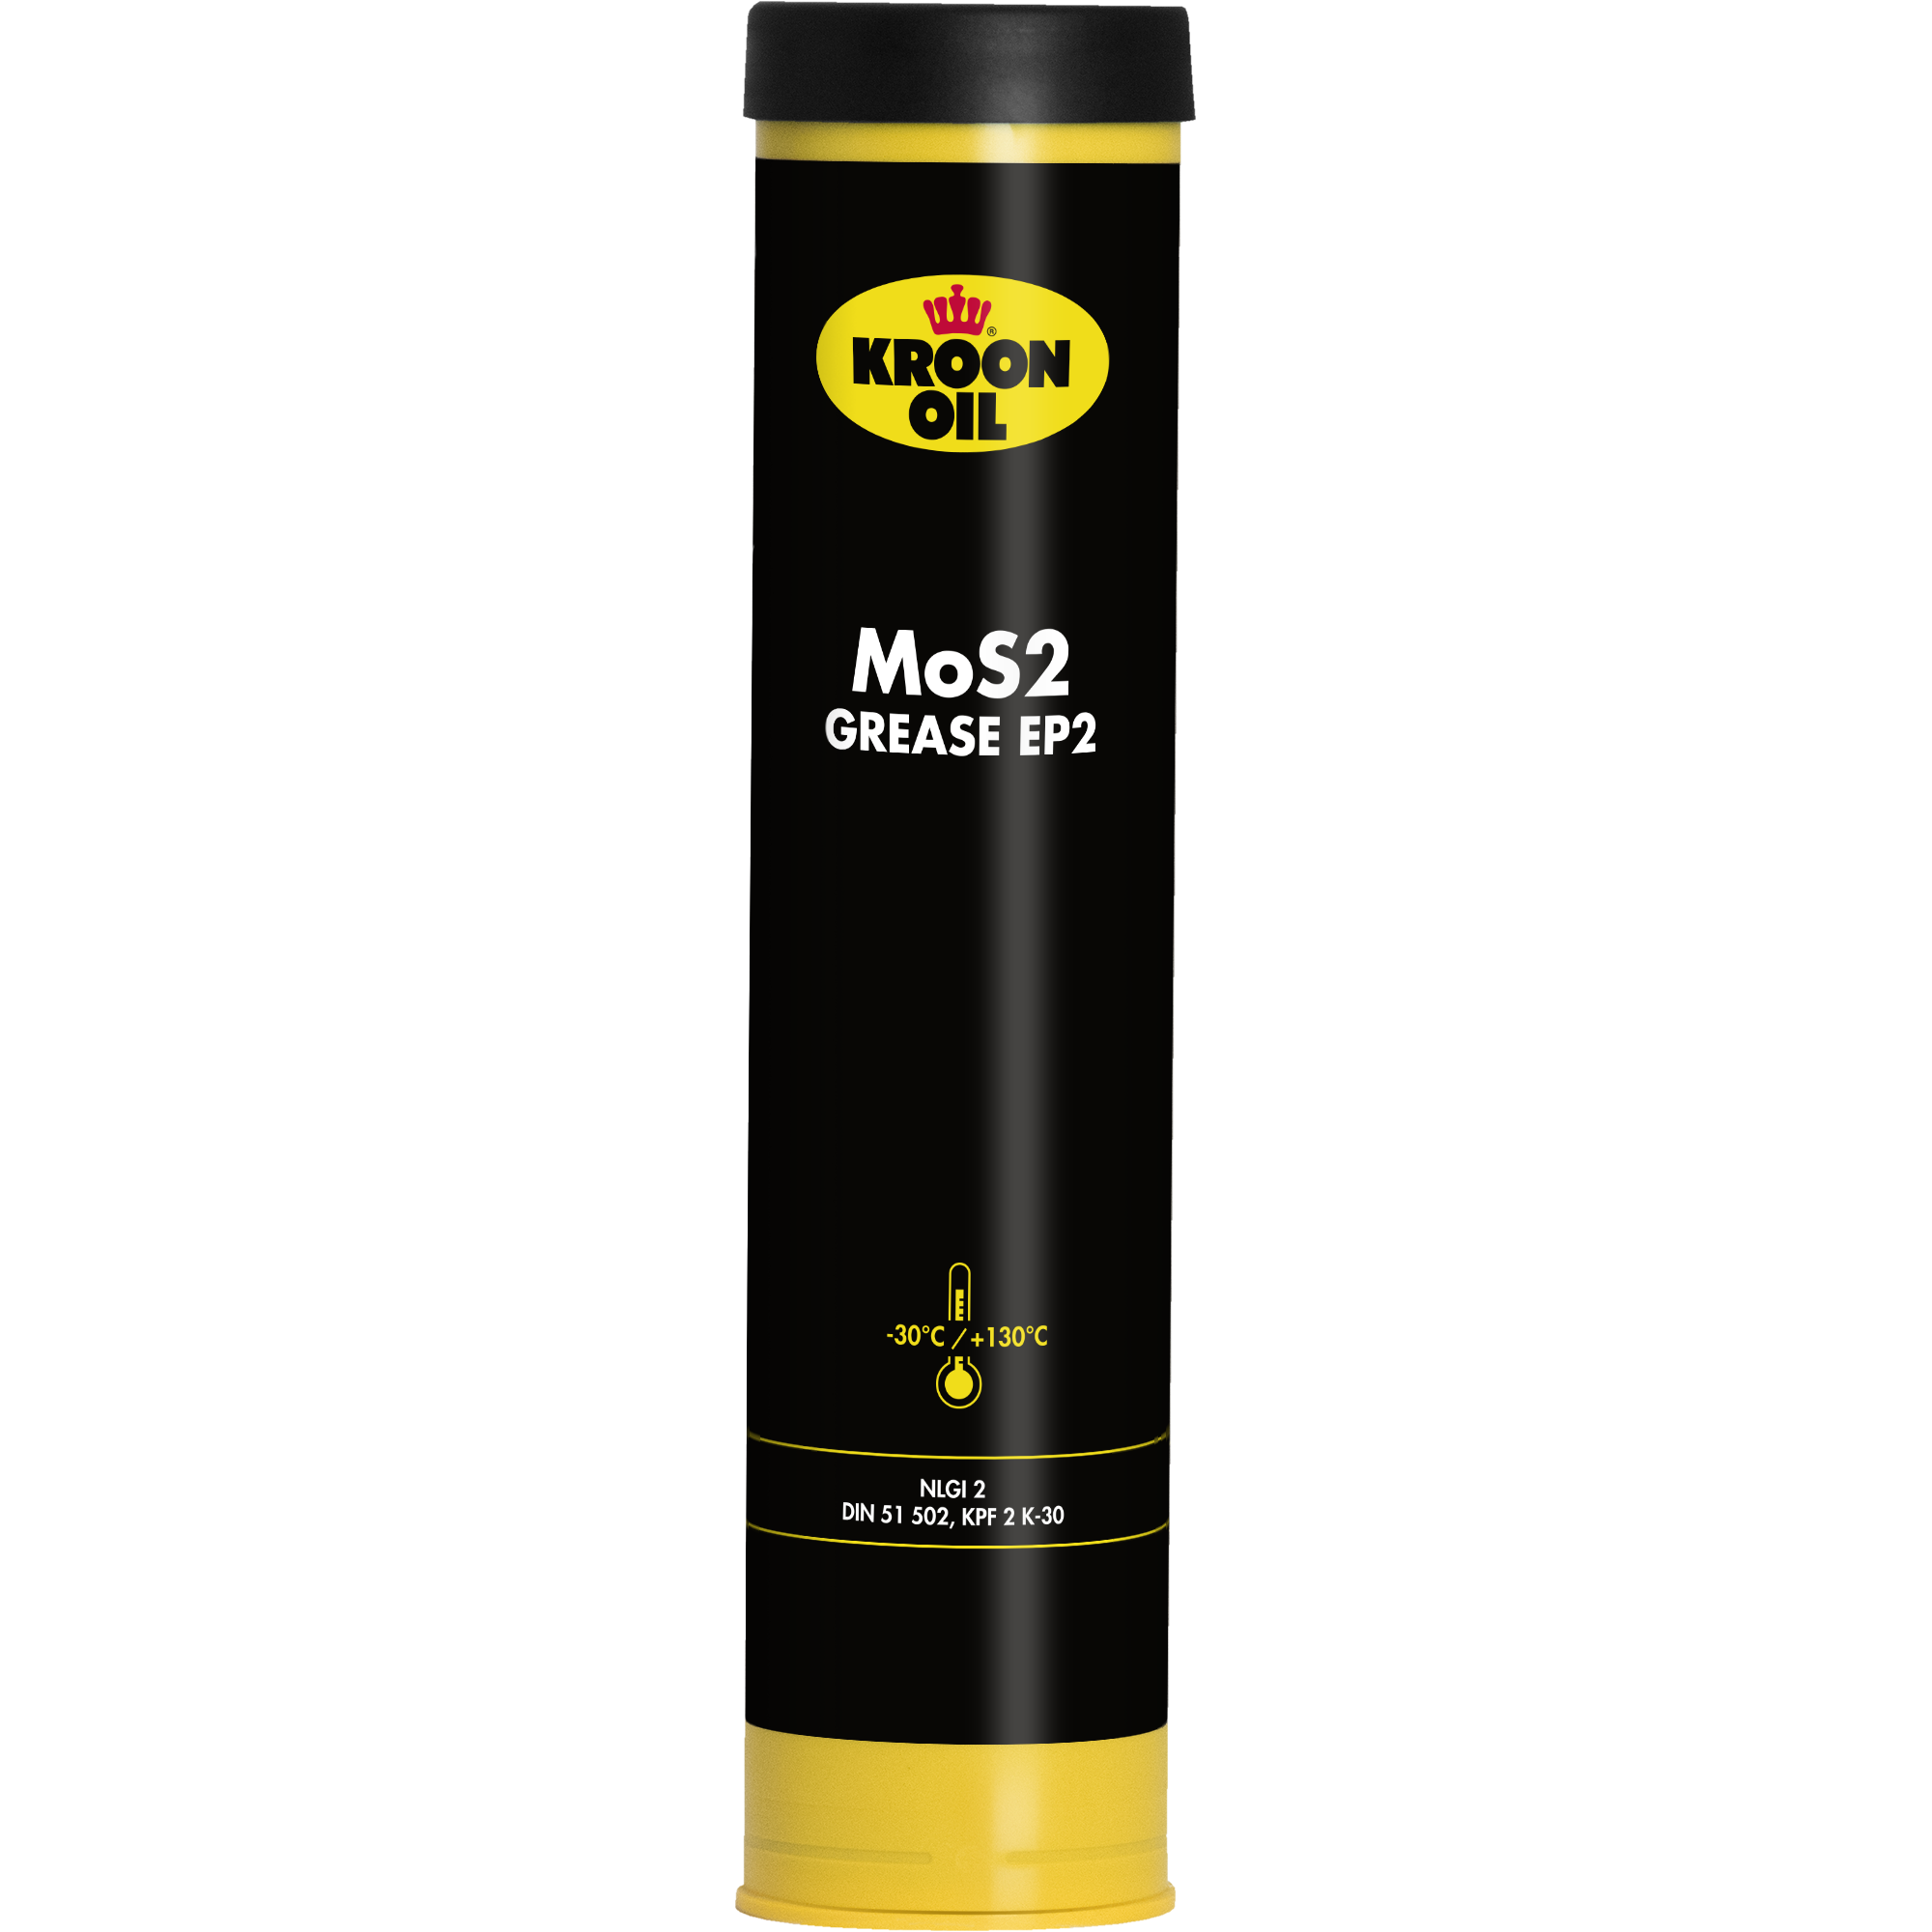 03006-400GR MoS2 Grease EP 2 is een multipurpose vet gebaseerd op goed geraffineerde basisoliën met een lithiumzeep als verdikkingsmiddel.